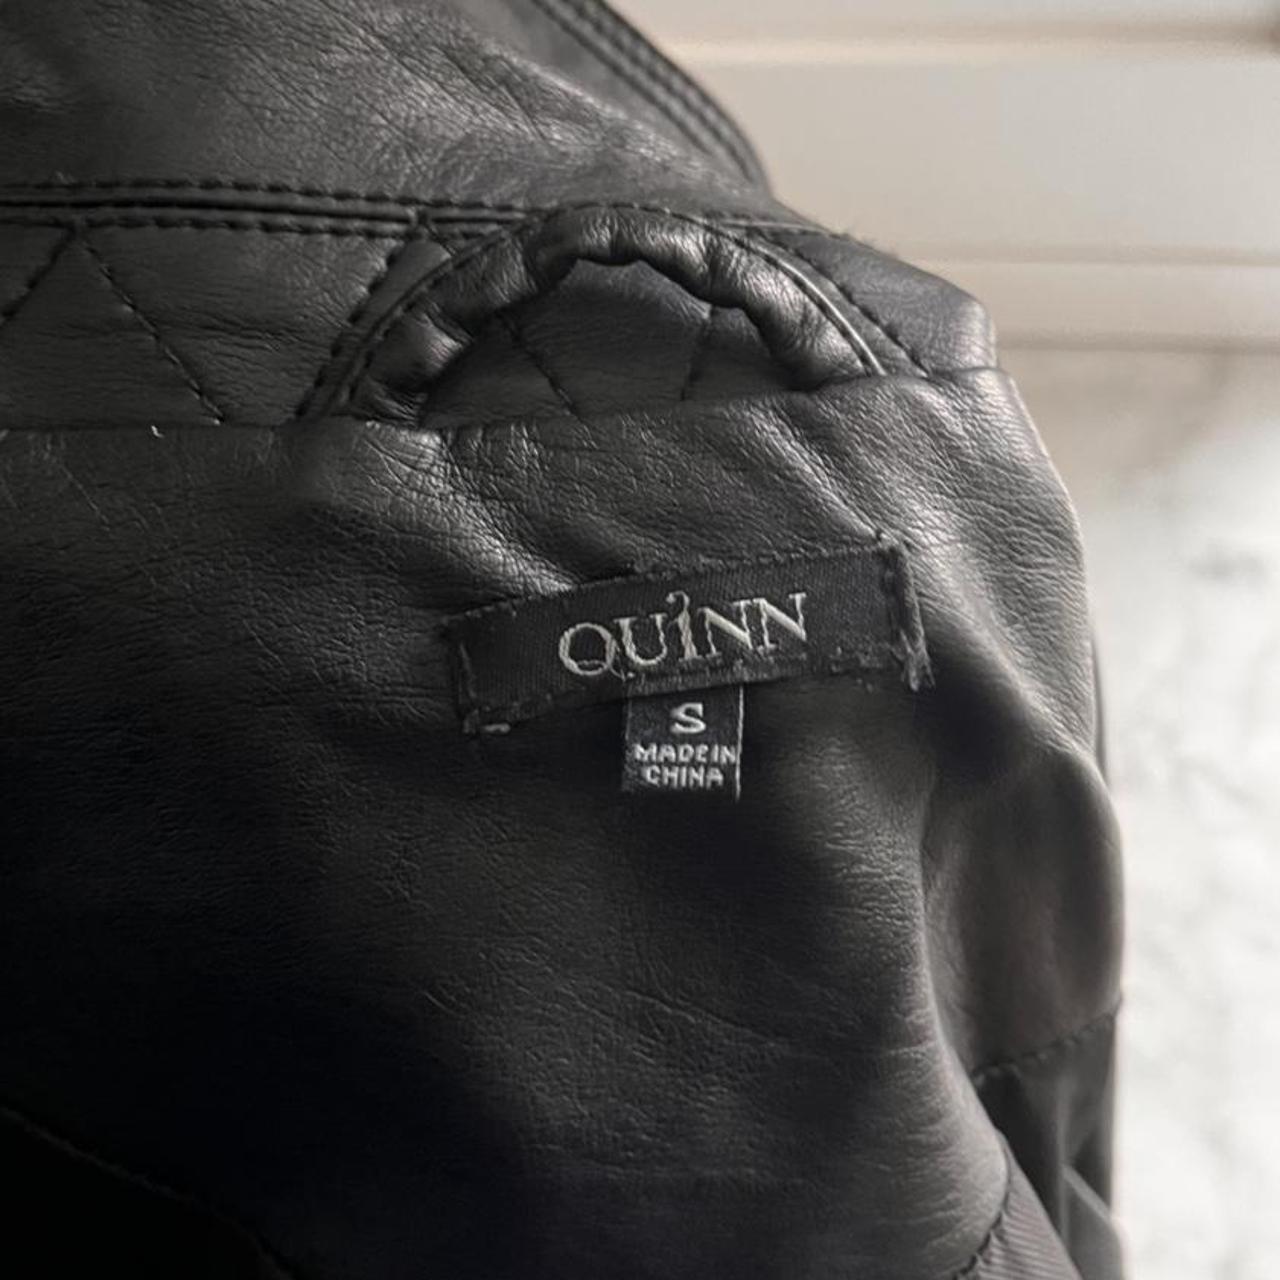 Product Image 4 - Adorable grunge leather jacket 
Similar